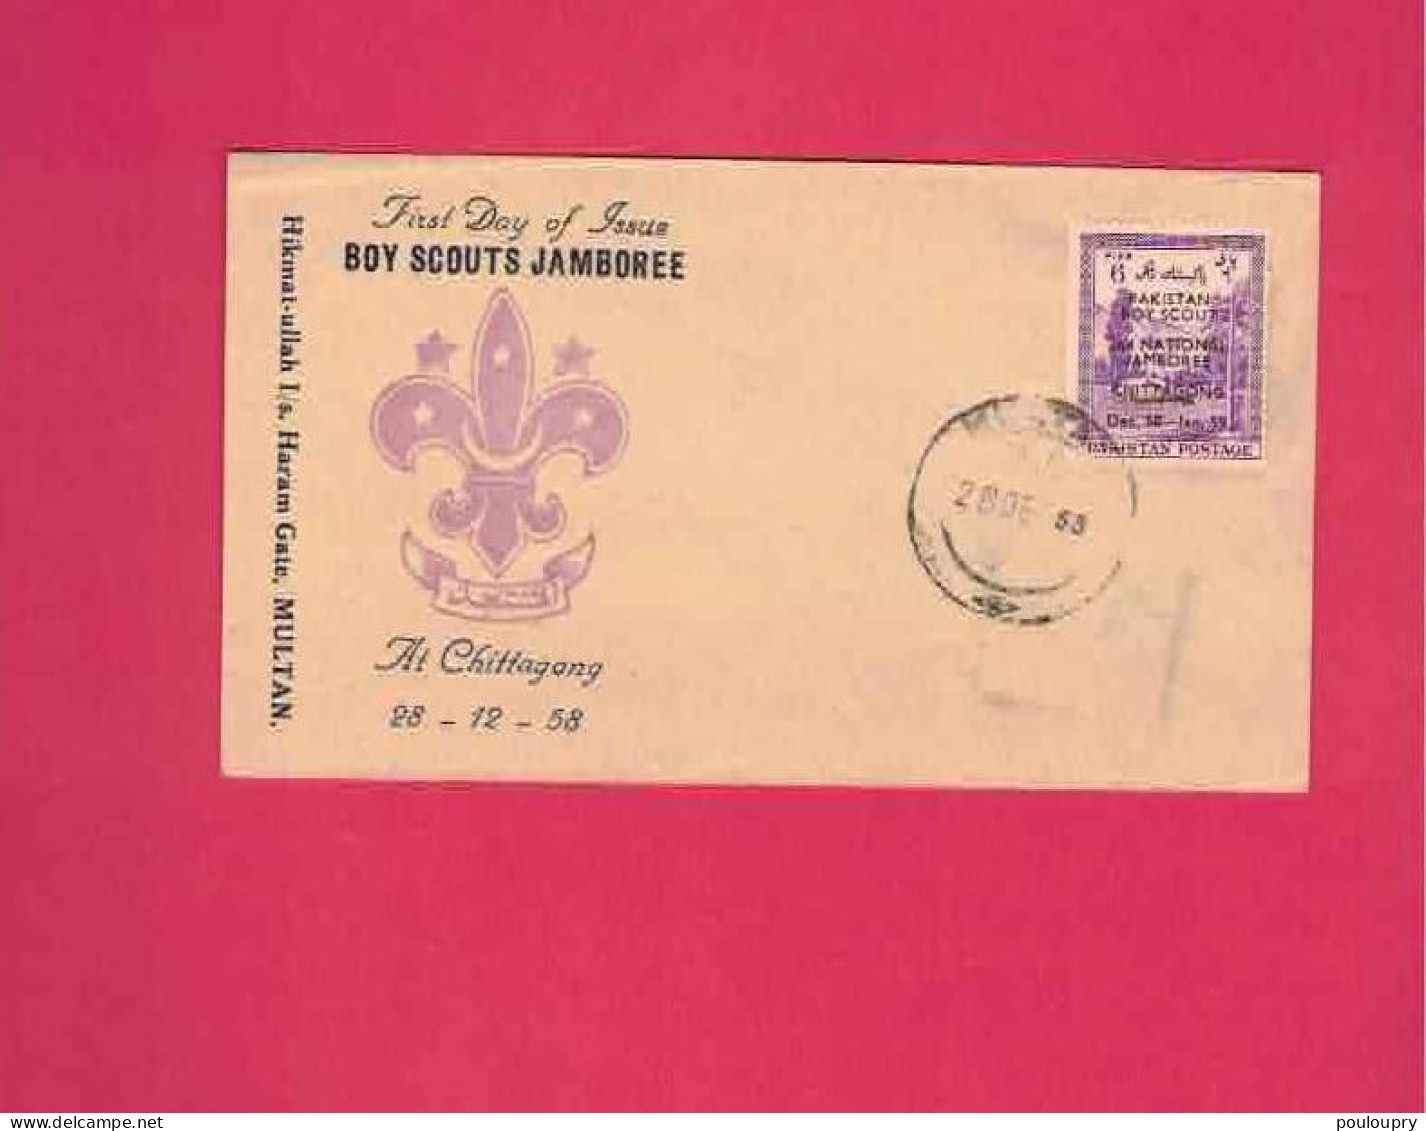 FDC De 1958 Du Pakistan - Boy Scouts Jamboree At Chittagong - Covers & Documents